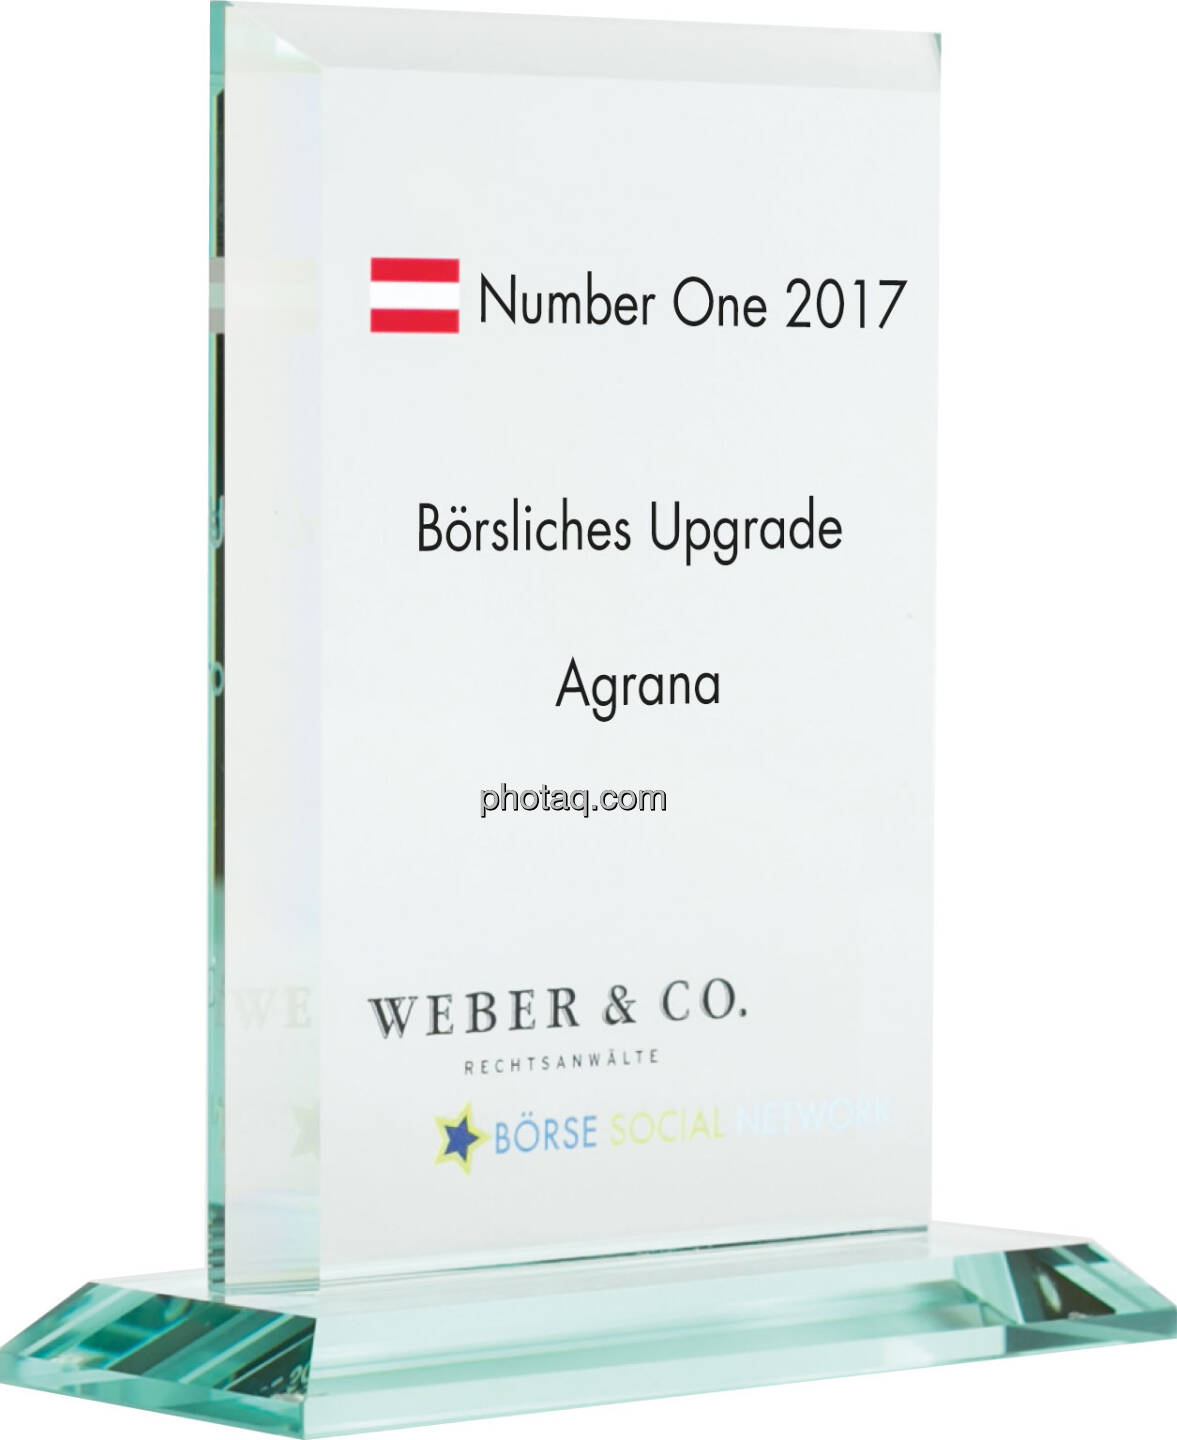 Number One Awards 2017 - Börsliches Upgrade - Agrana